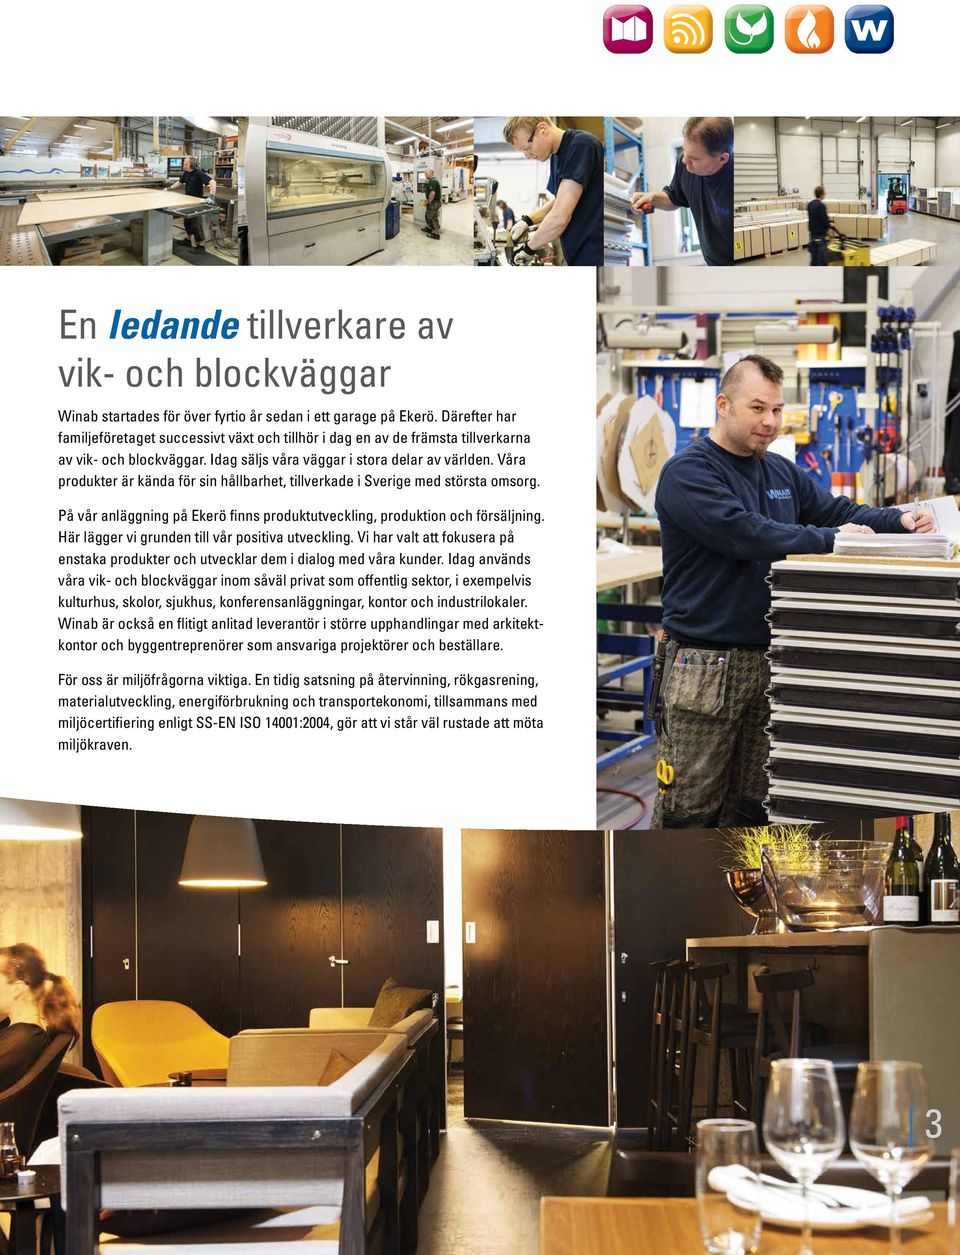 Våra produkter är kända för sin hållbarhet, tillverkade i Sverige med största omsorg. På vår anläggning på Ekerö finns produktutveckling, produktion och försäljning.